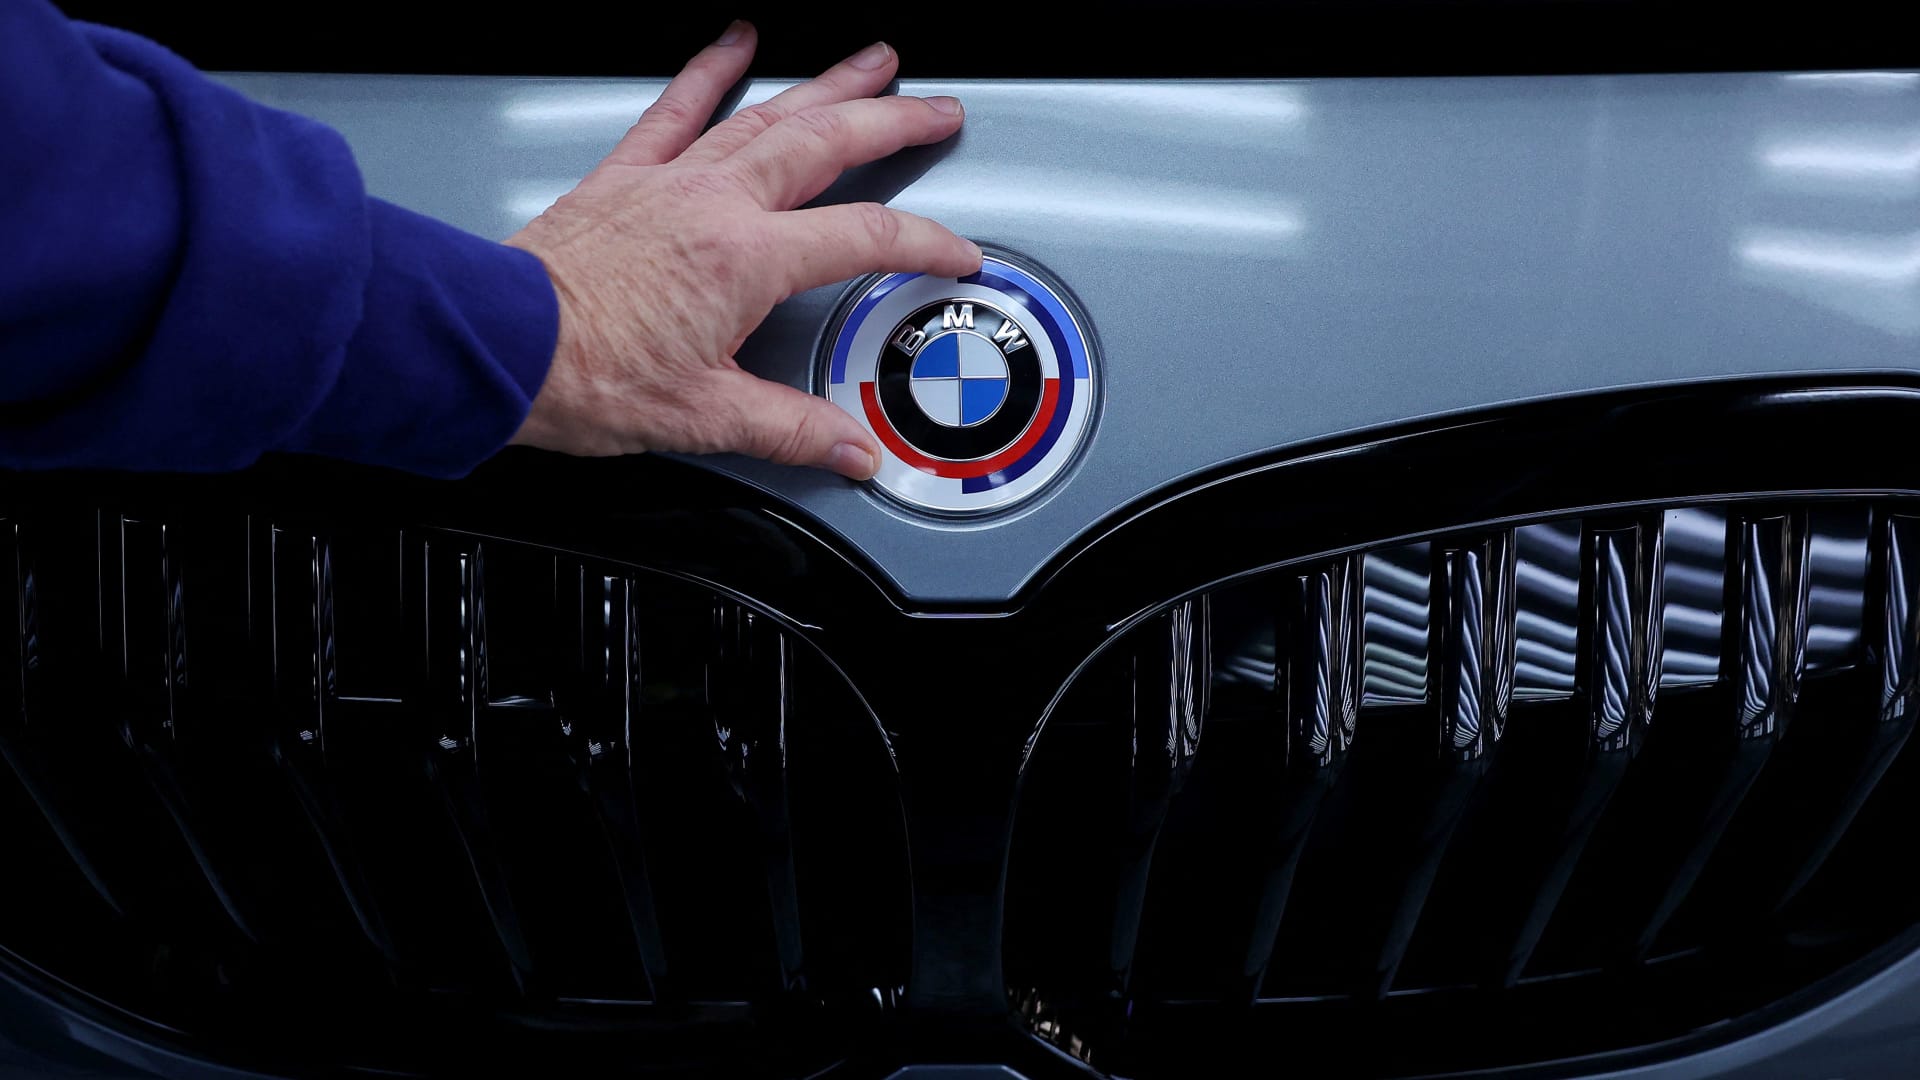 BMW unveils Vision Neue Klasse concept car as it touts the dawn of a new EV era